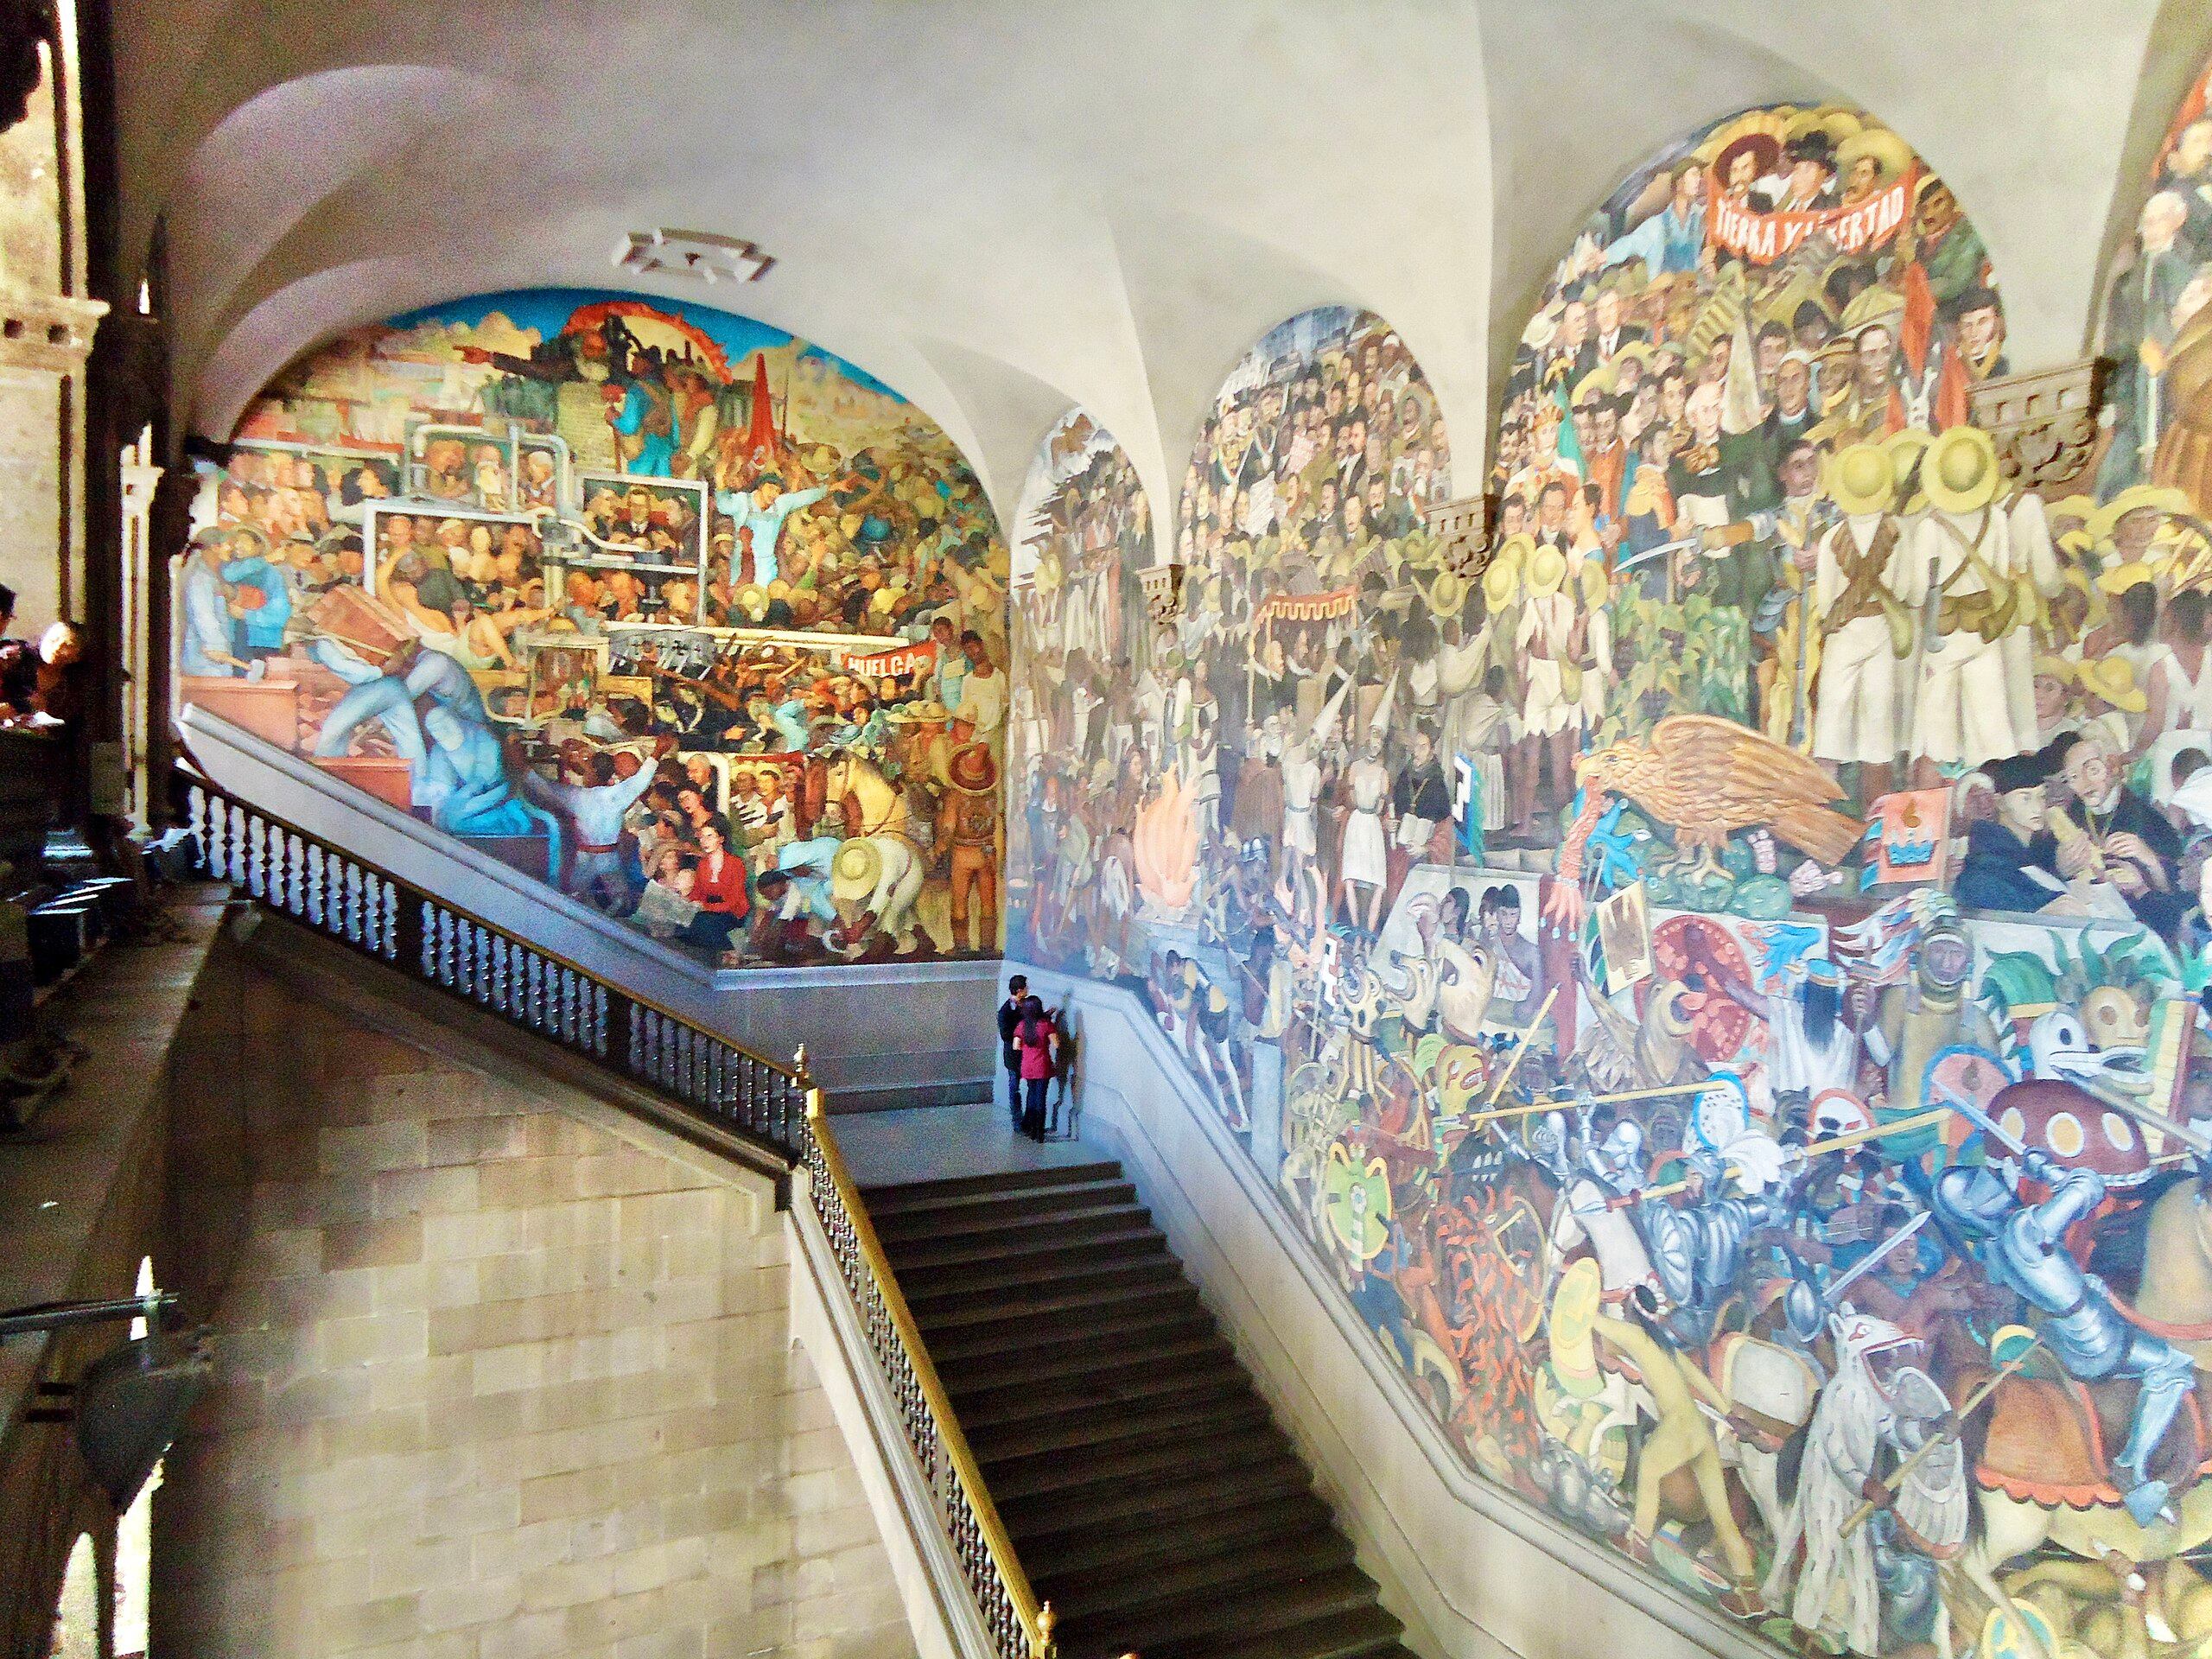 Diego Rivera es un exponente del muralismo, cuyos trabajos están repartidos por varios lugares de Ciudad de México. Uno de los más visitados son los murales que se visitan integrados con la entrada al Palacio Nacional.